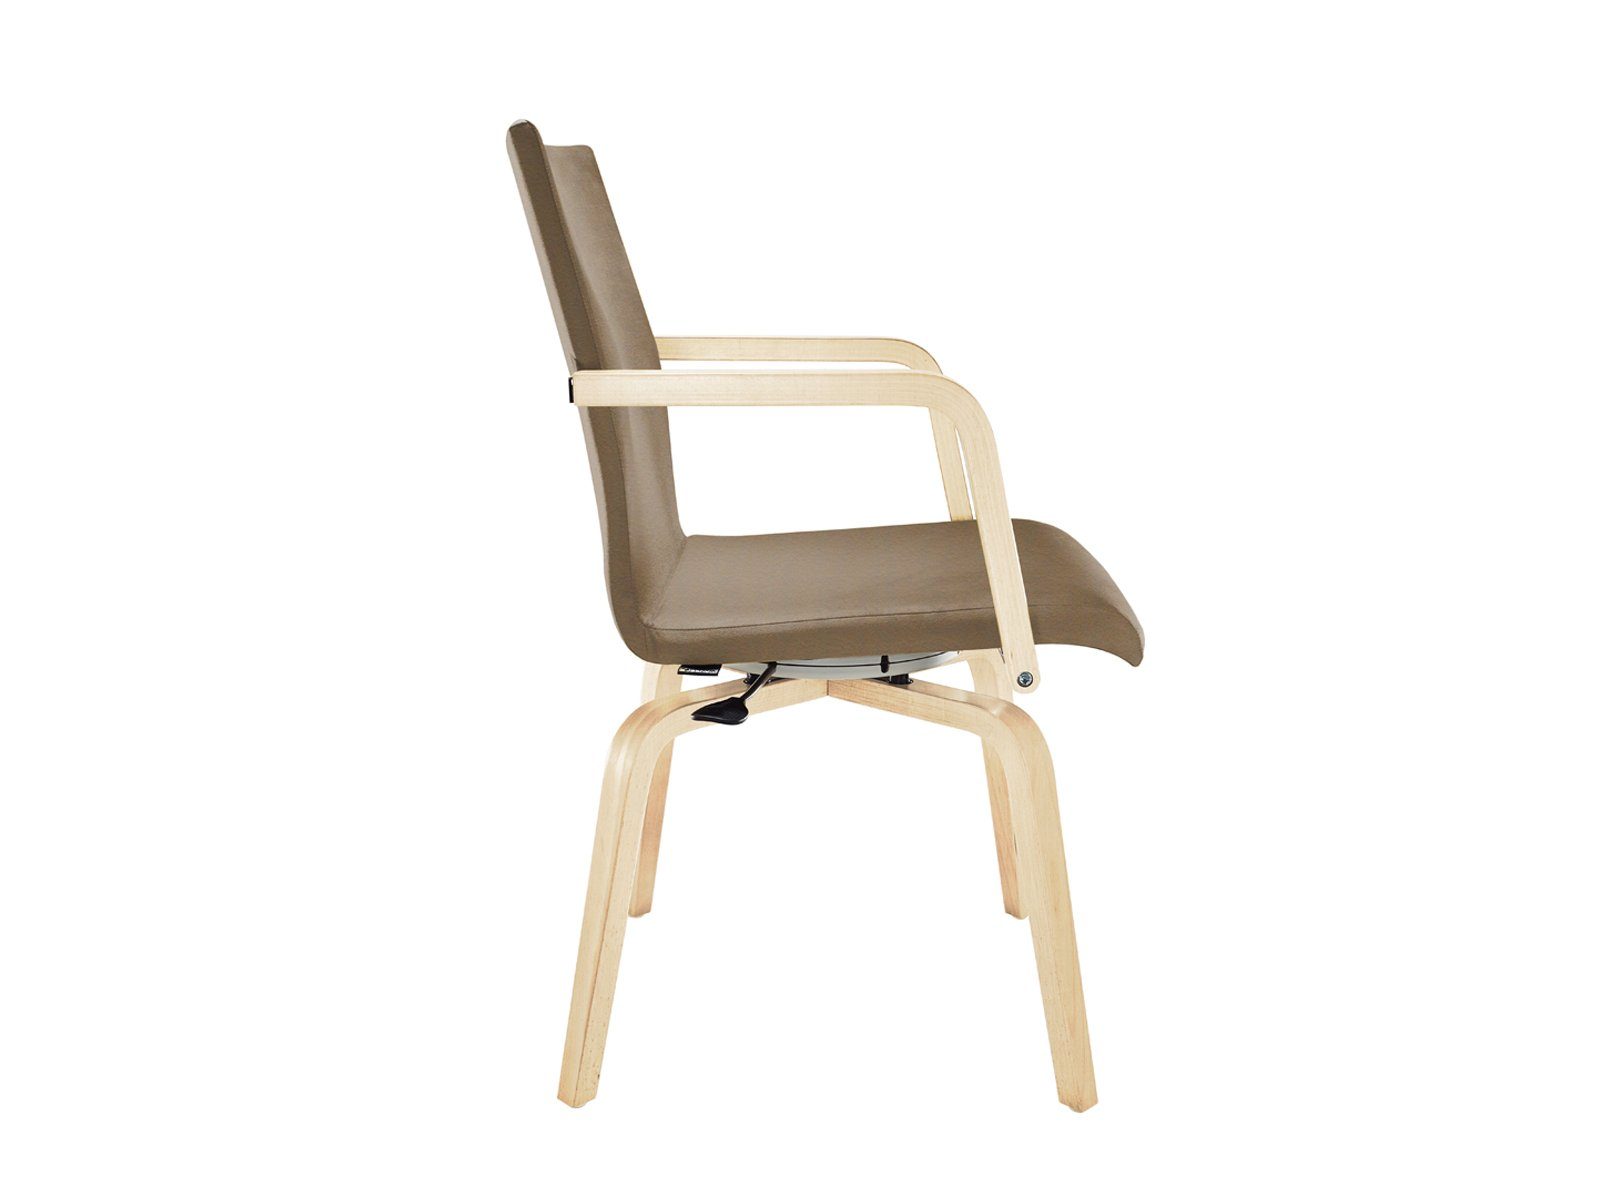 Senioren-stuhl Braun Armlehnstuhl, Sitzkultur ergonomischer Armlehnen, mit Bezug Besucherstuhl Mauser